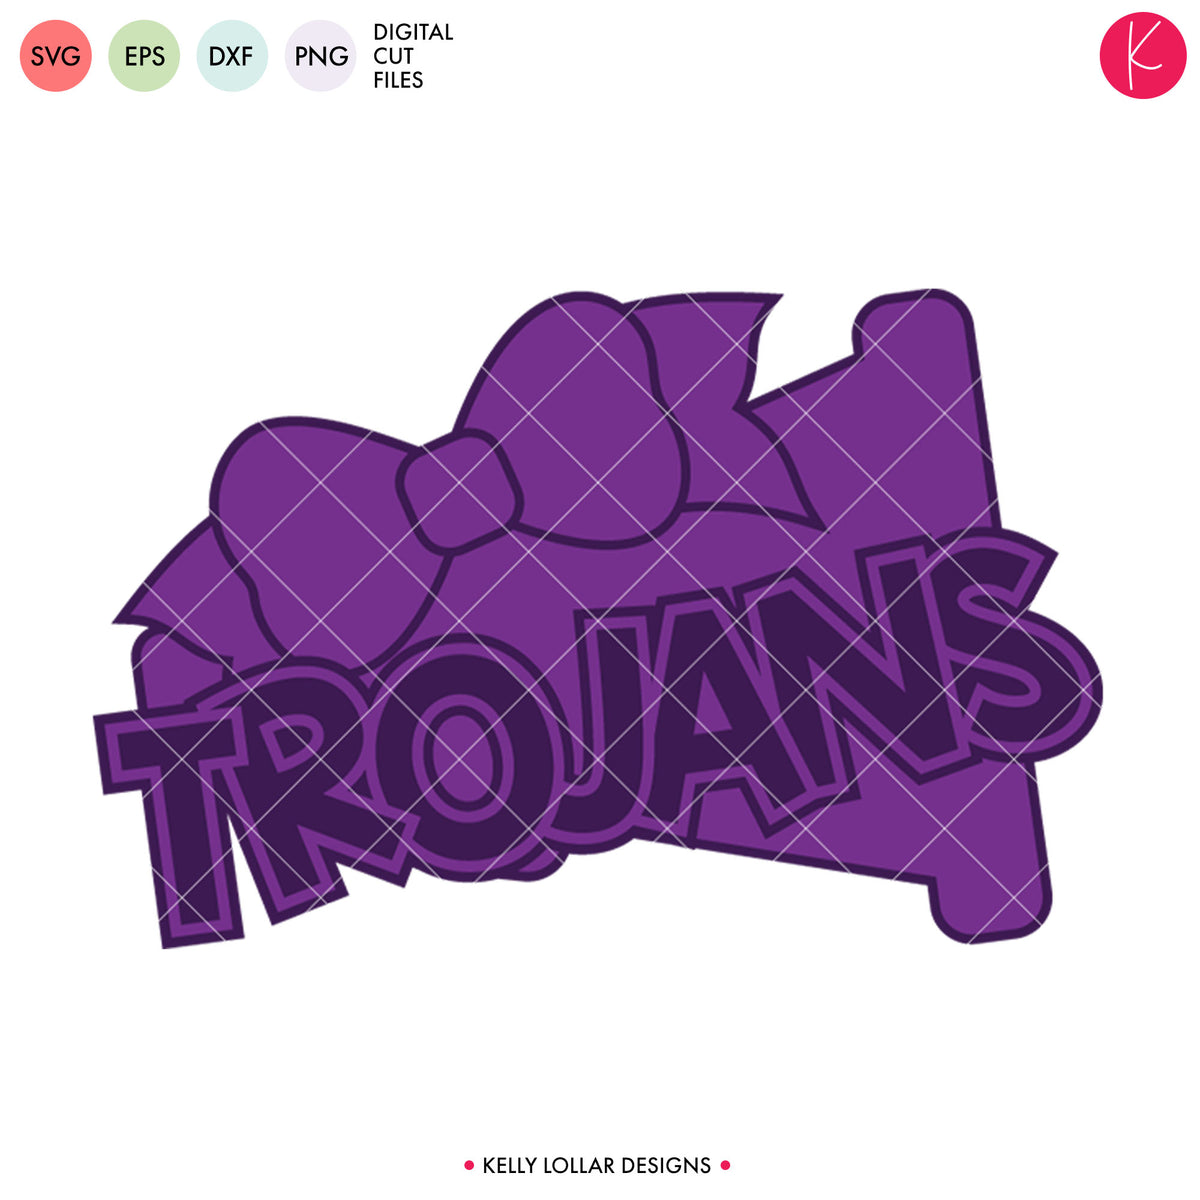 Trojans Cheer Bundle | SVG DXF EPS PNG Cut Files